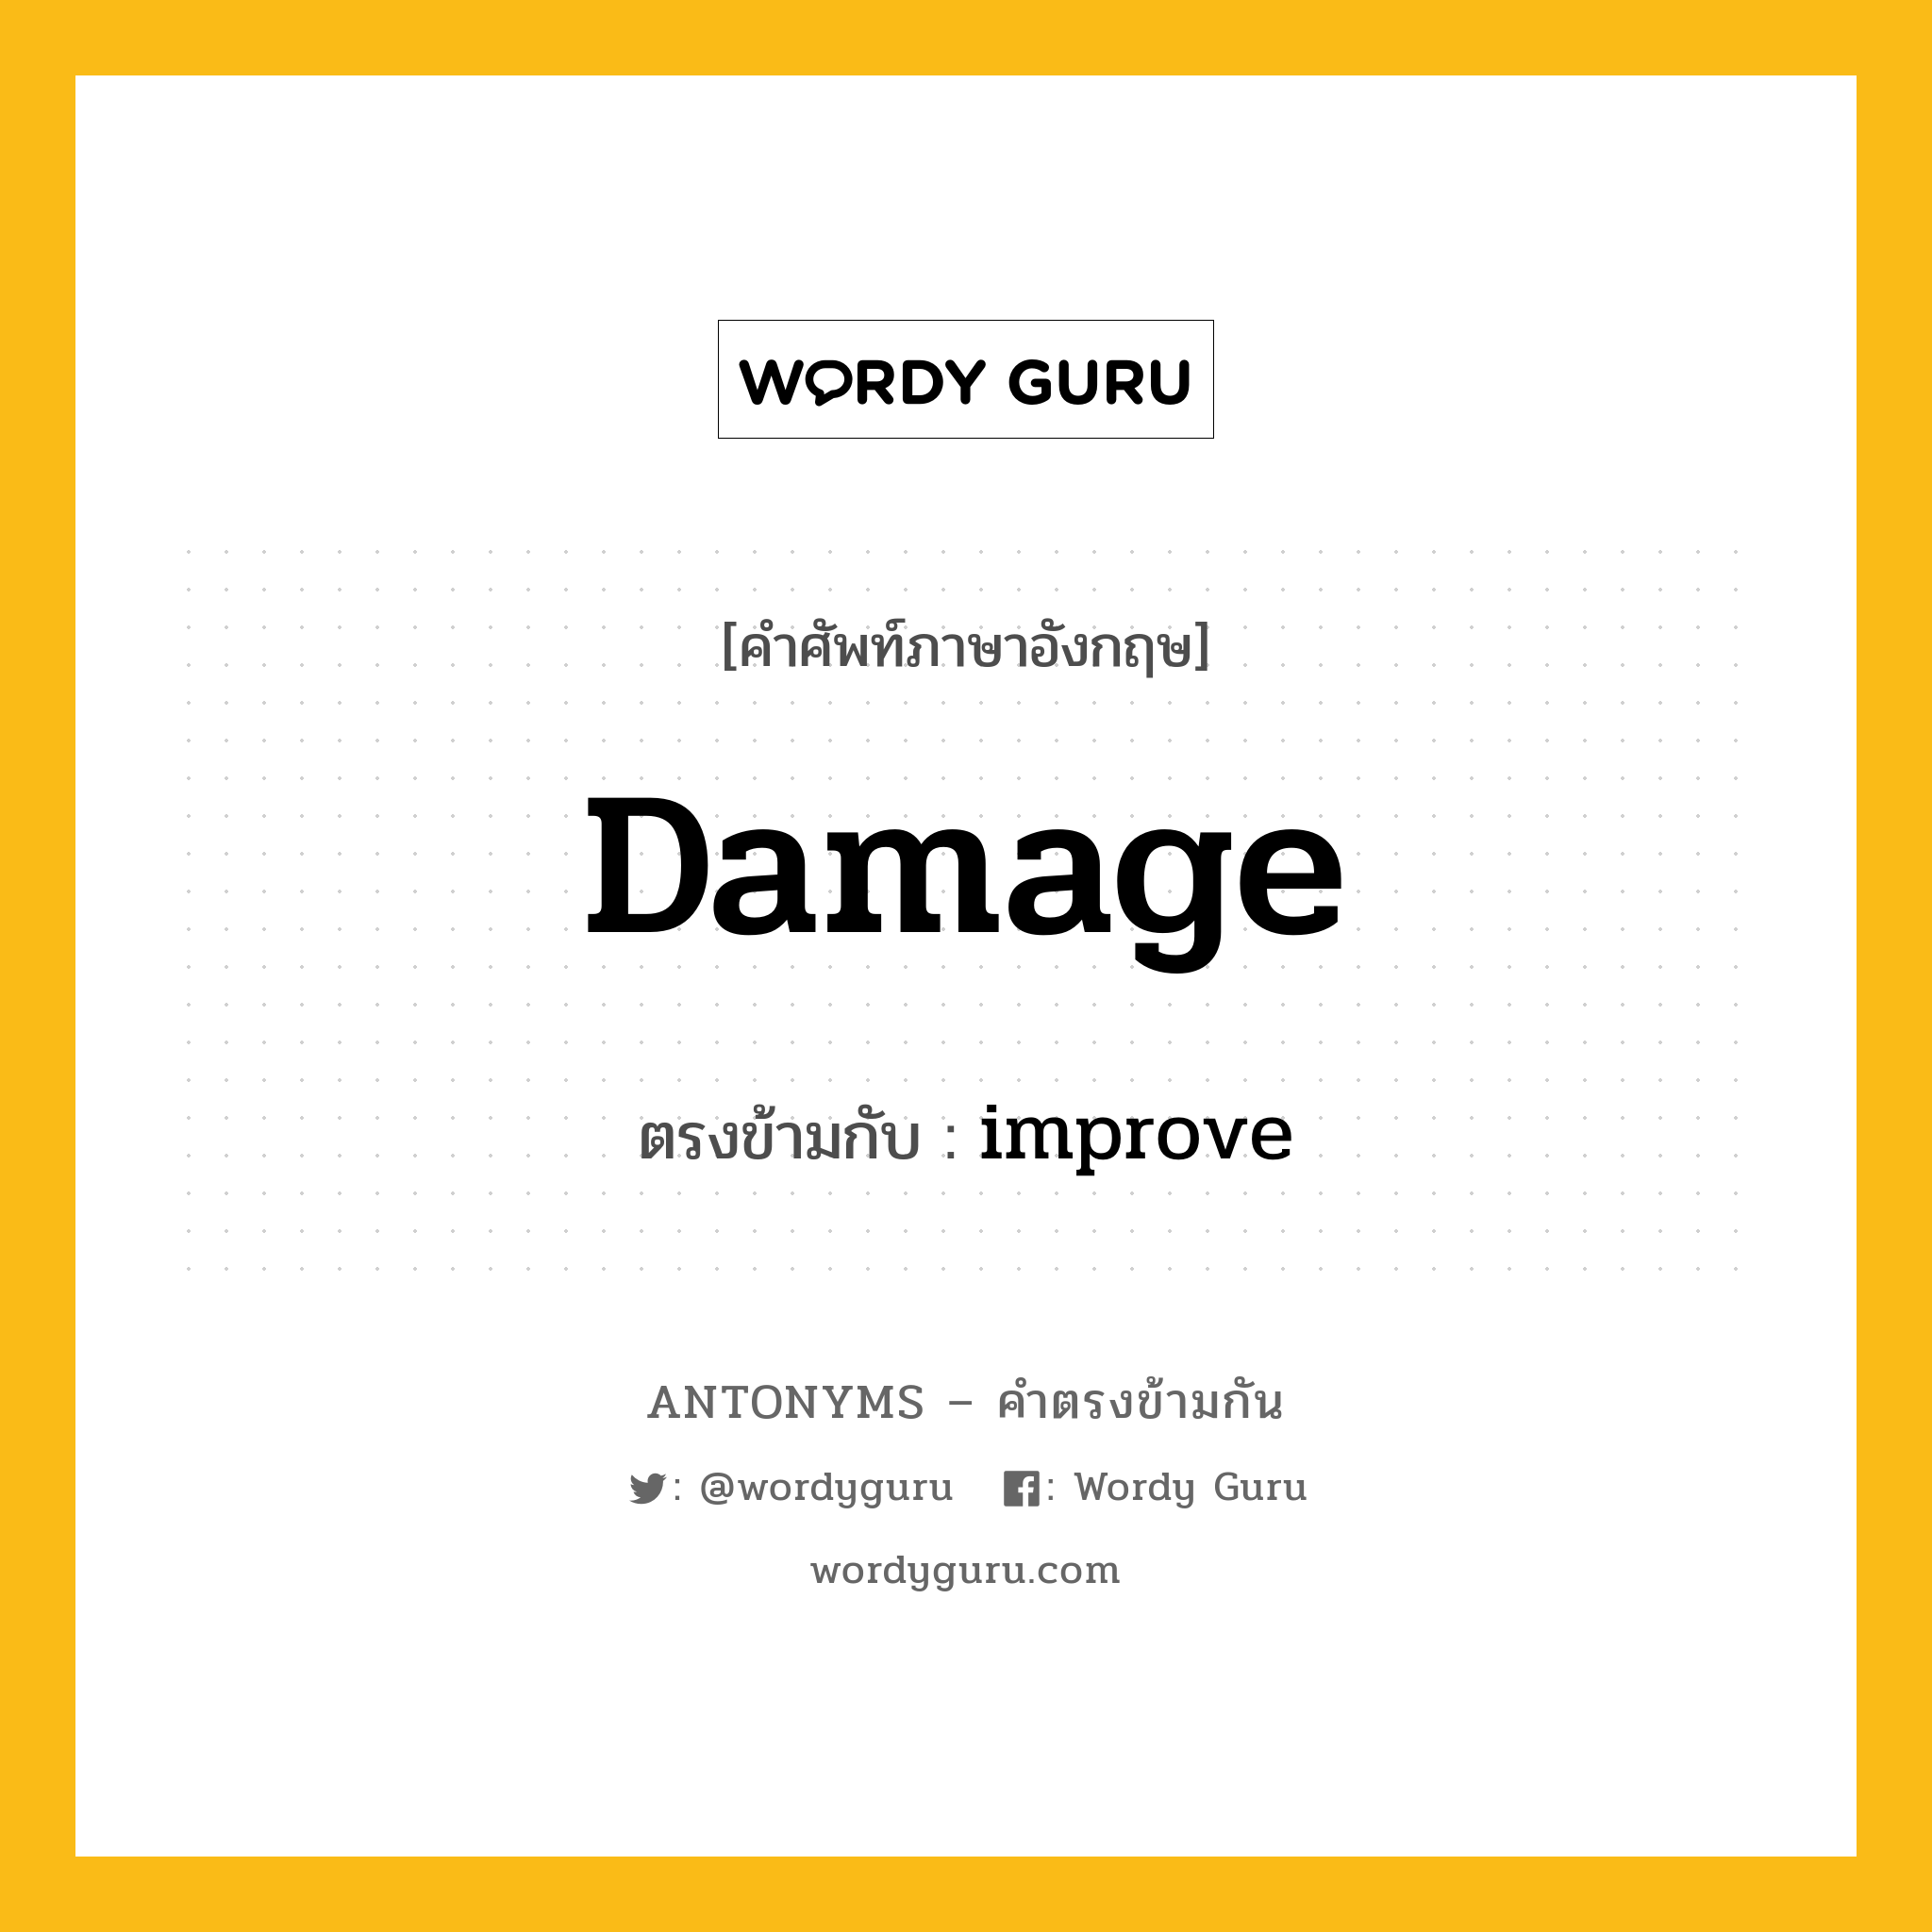 damage เป็นคำตรงข้ามกับคำไหนบ้าง?, คำศัพท์ภาษาอังกฤษ damage ตรงข้ามกับ improve หมวด improve